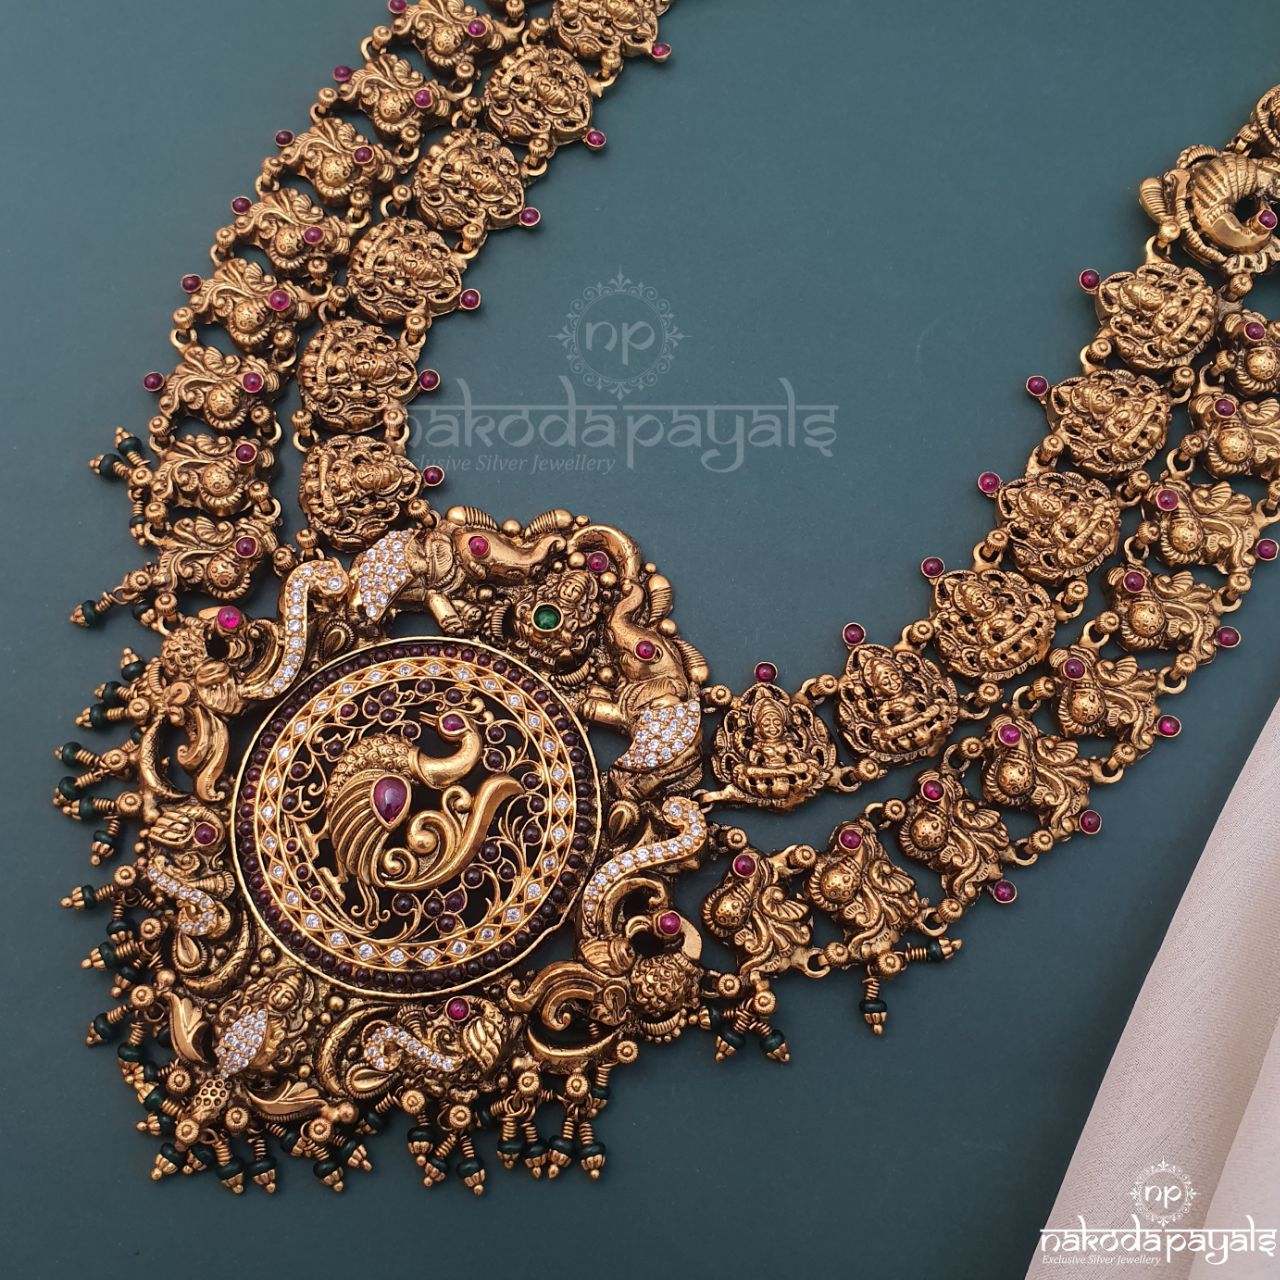 Grand Wide Lakshmi Peacock Neckpiece